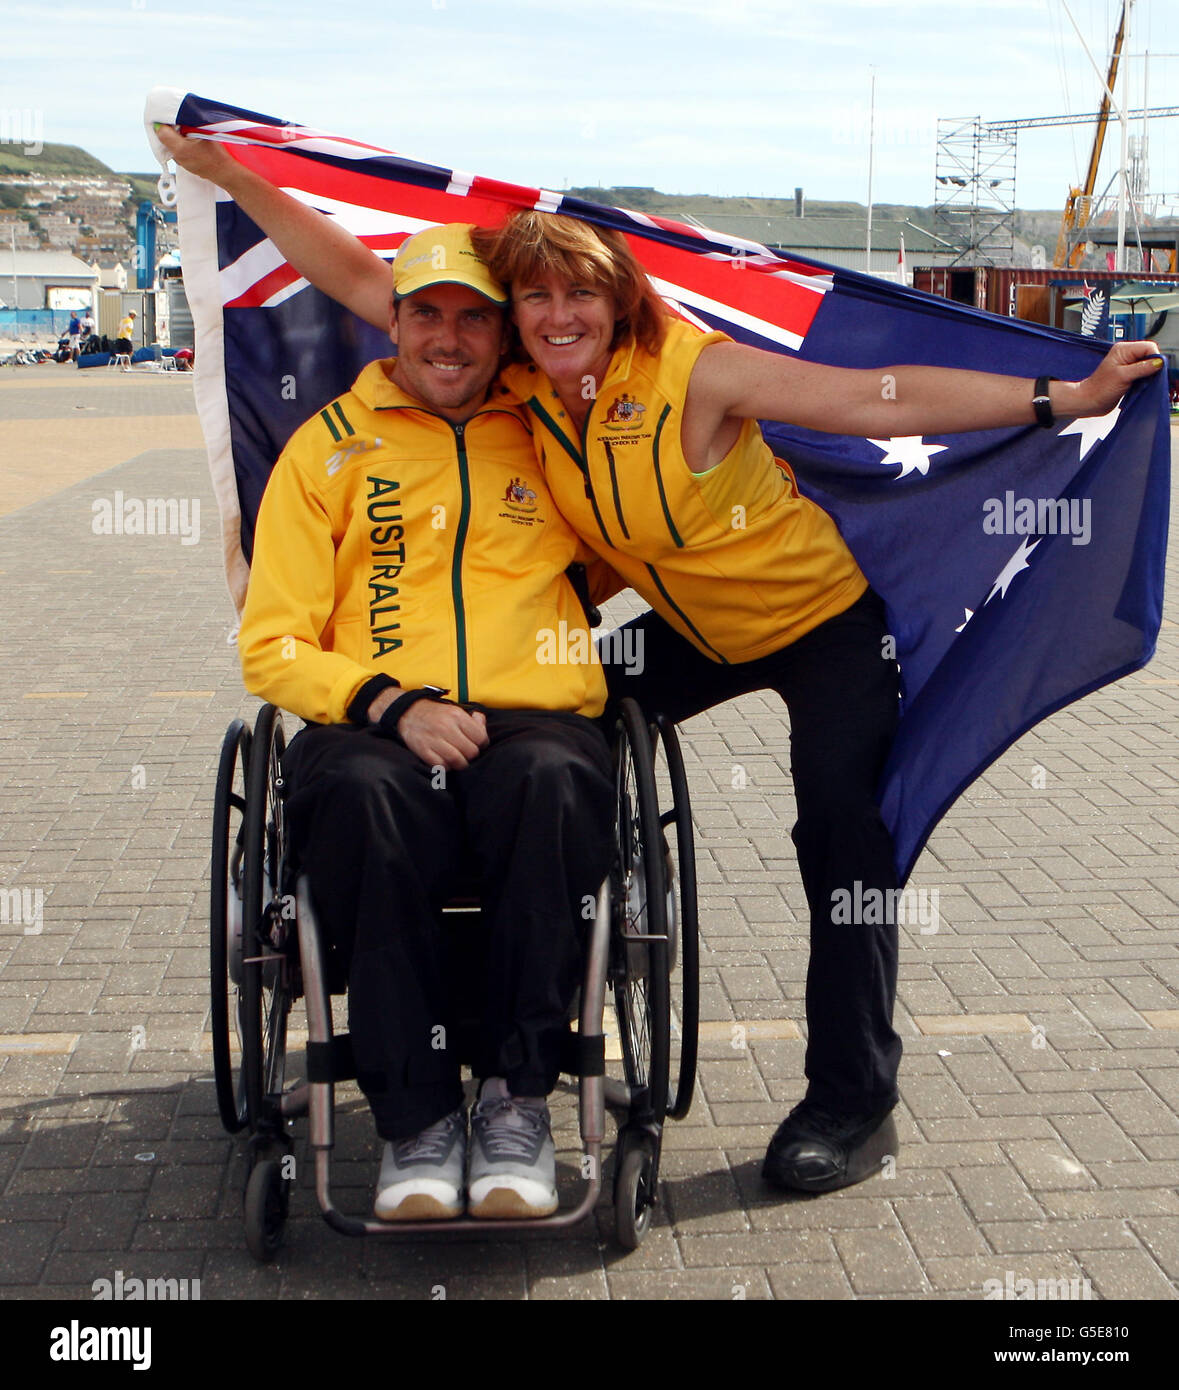 L'equipaggio australiano di Skud Daniel Fitzgibbon e Liesl Tesch celebrano oggi la loro medaglia d'oro al Sailing Venue di Weymouth e Portland. Foto Stock